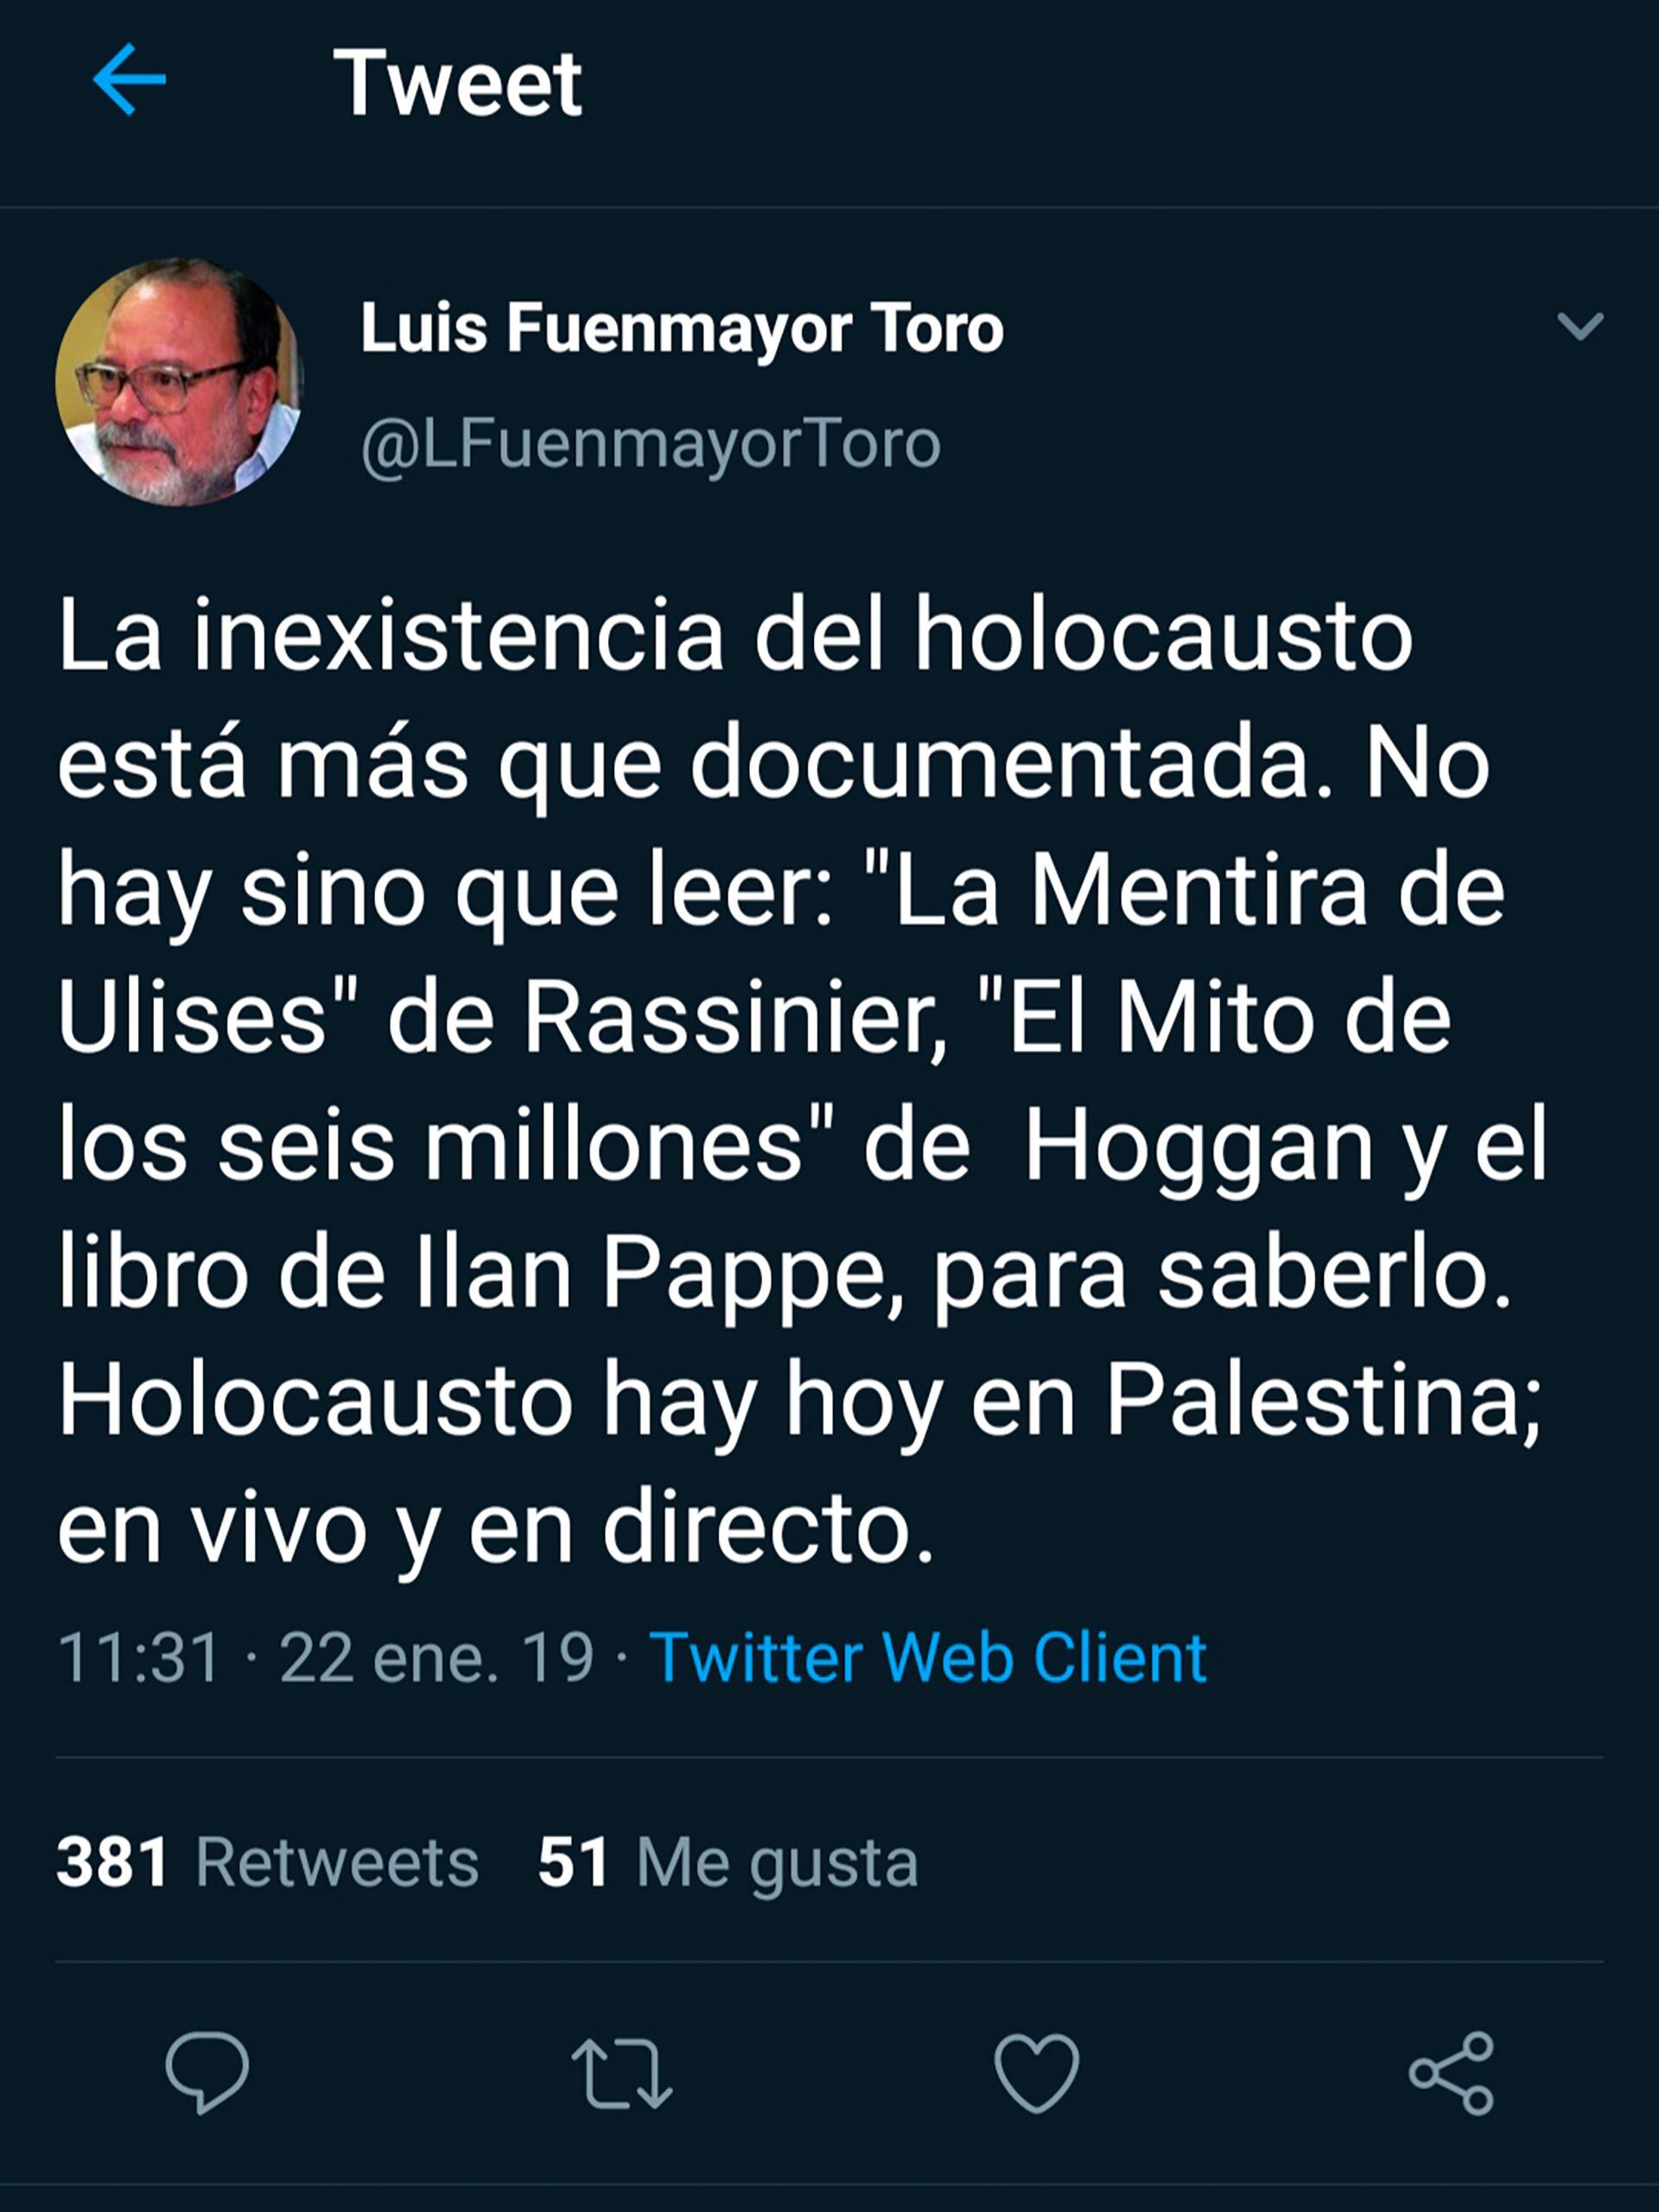 Luis Fuenmayor Toro